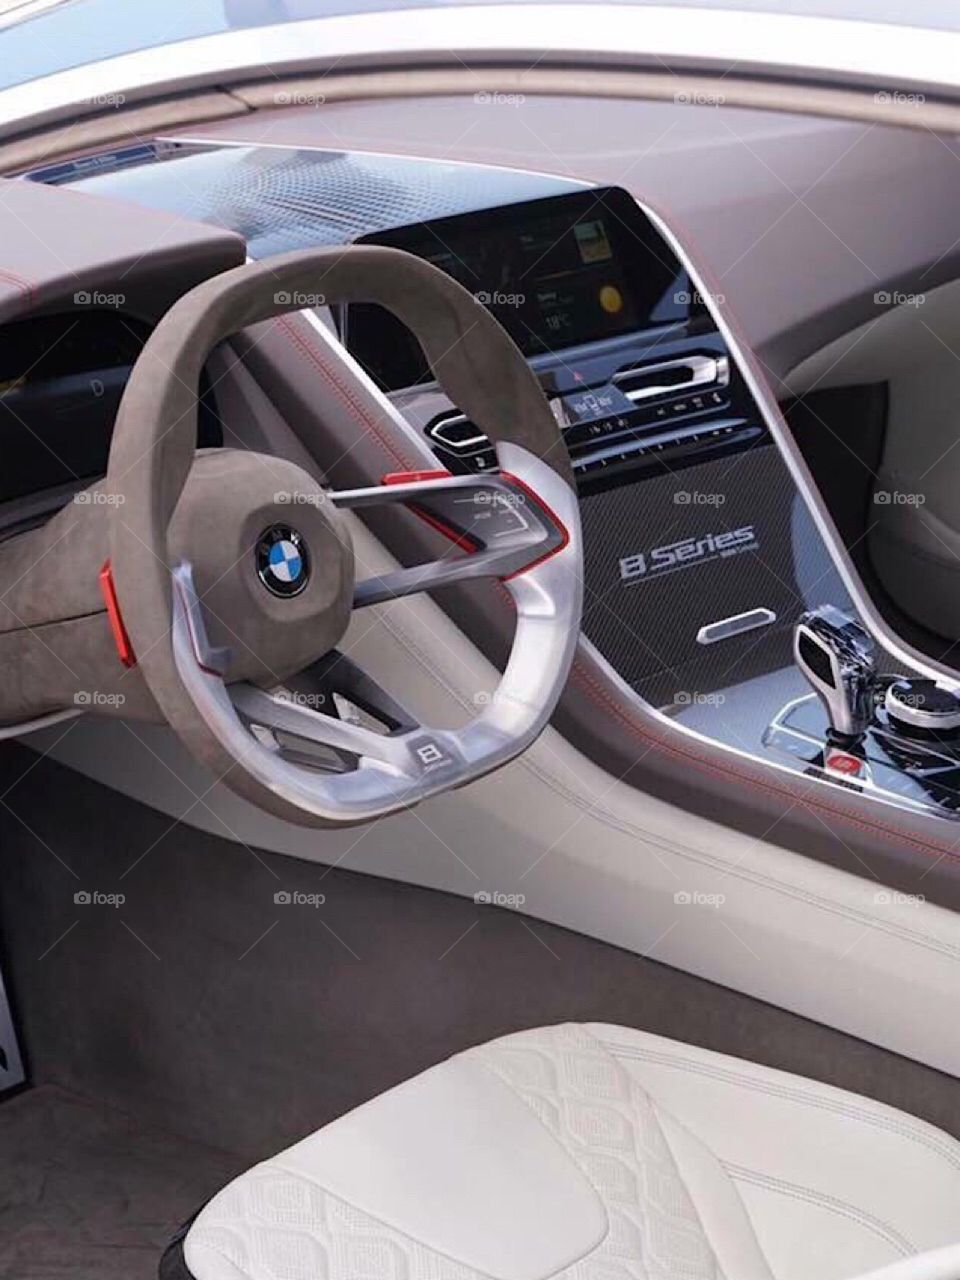 Nice steering wheel